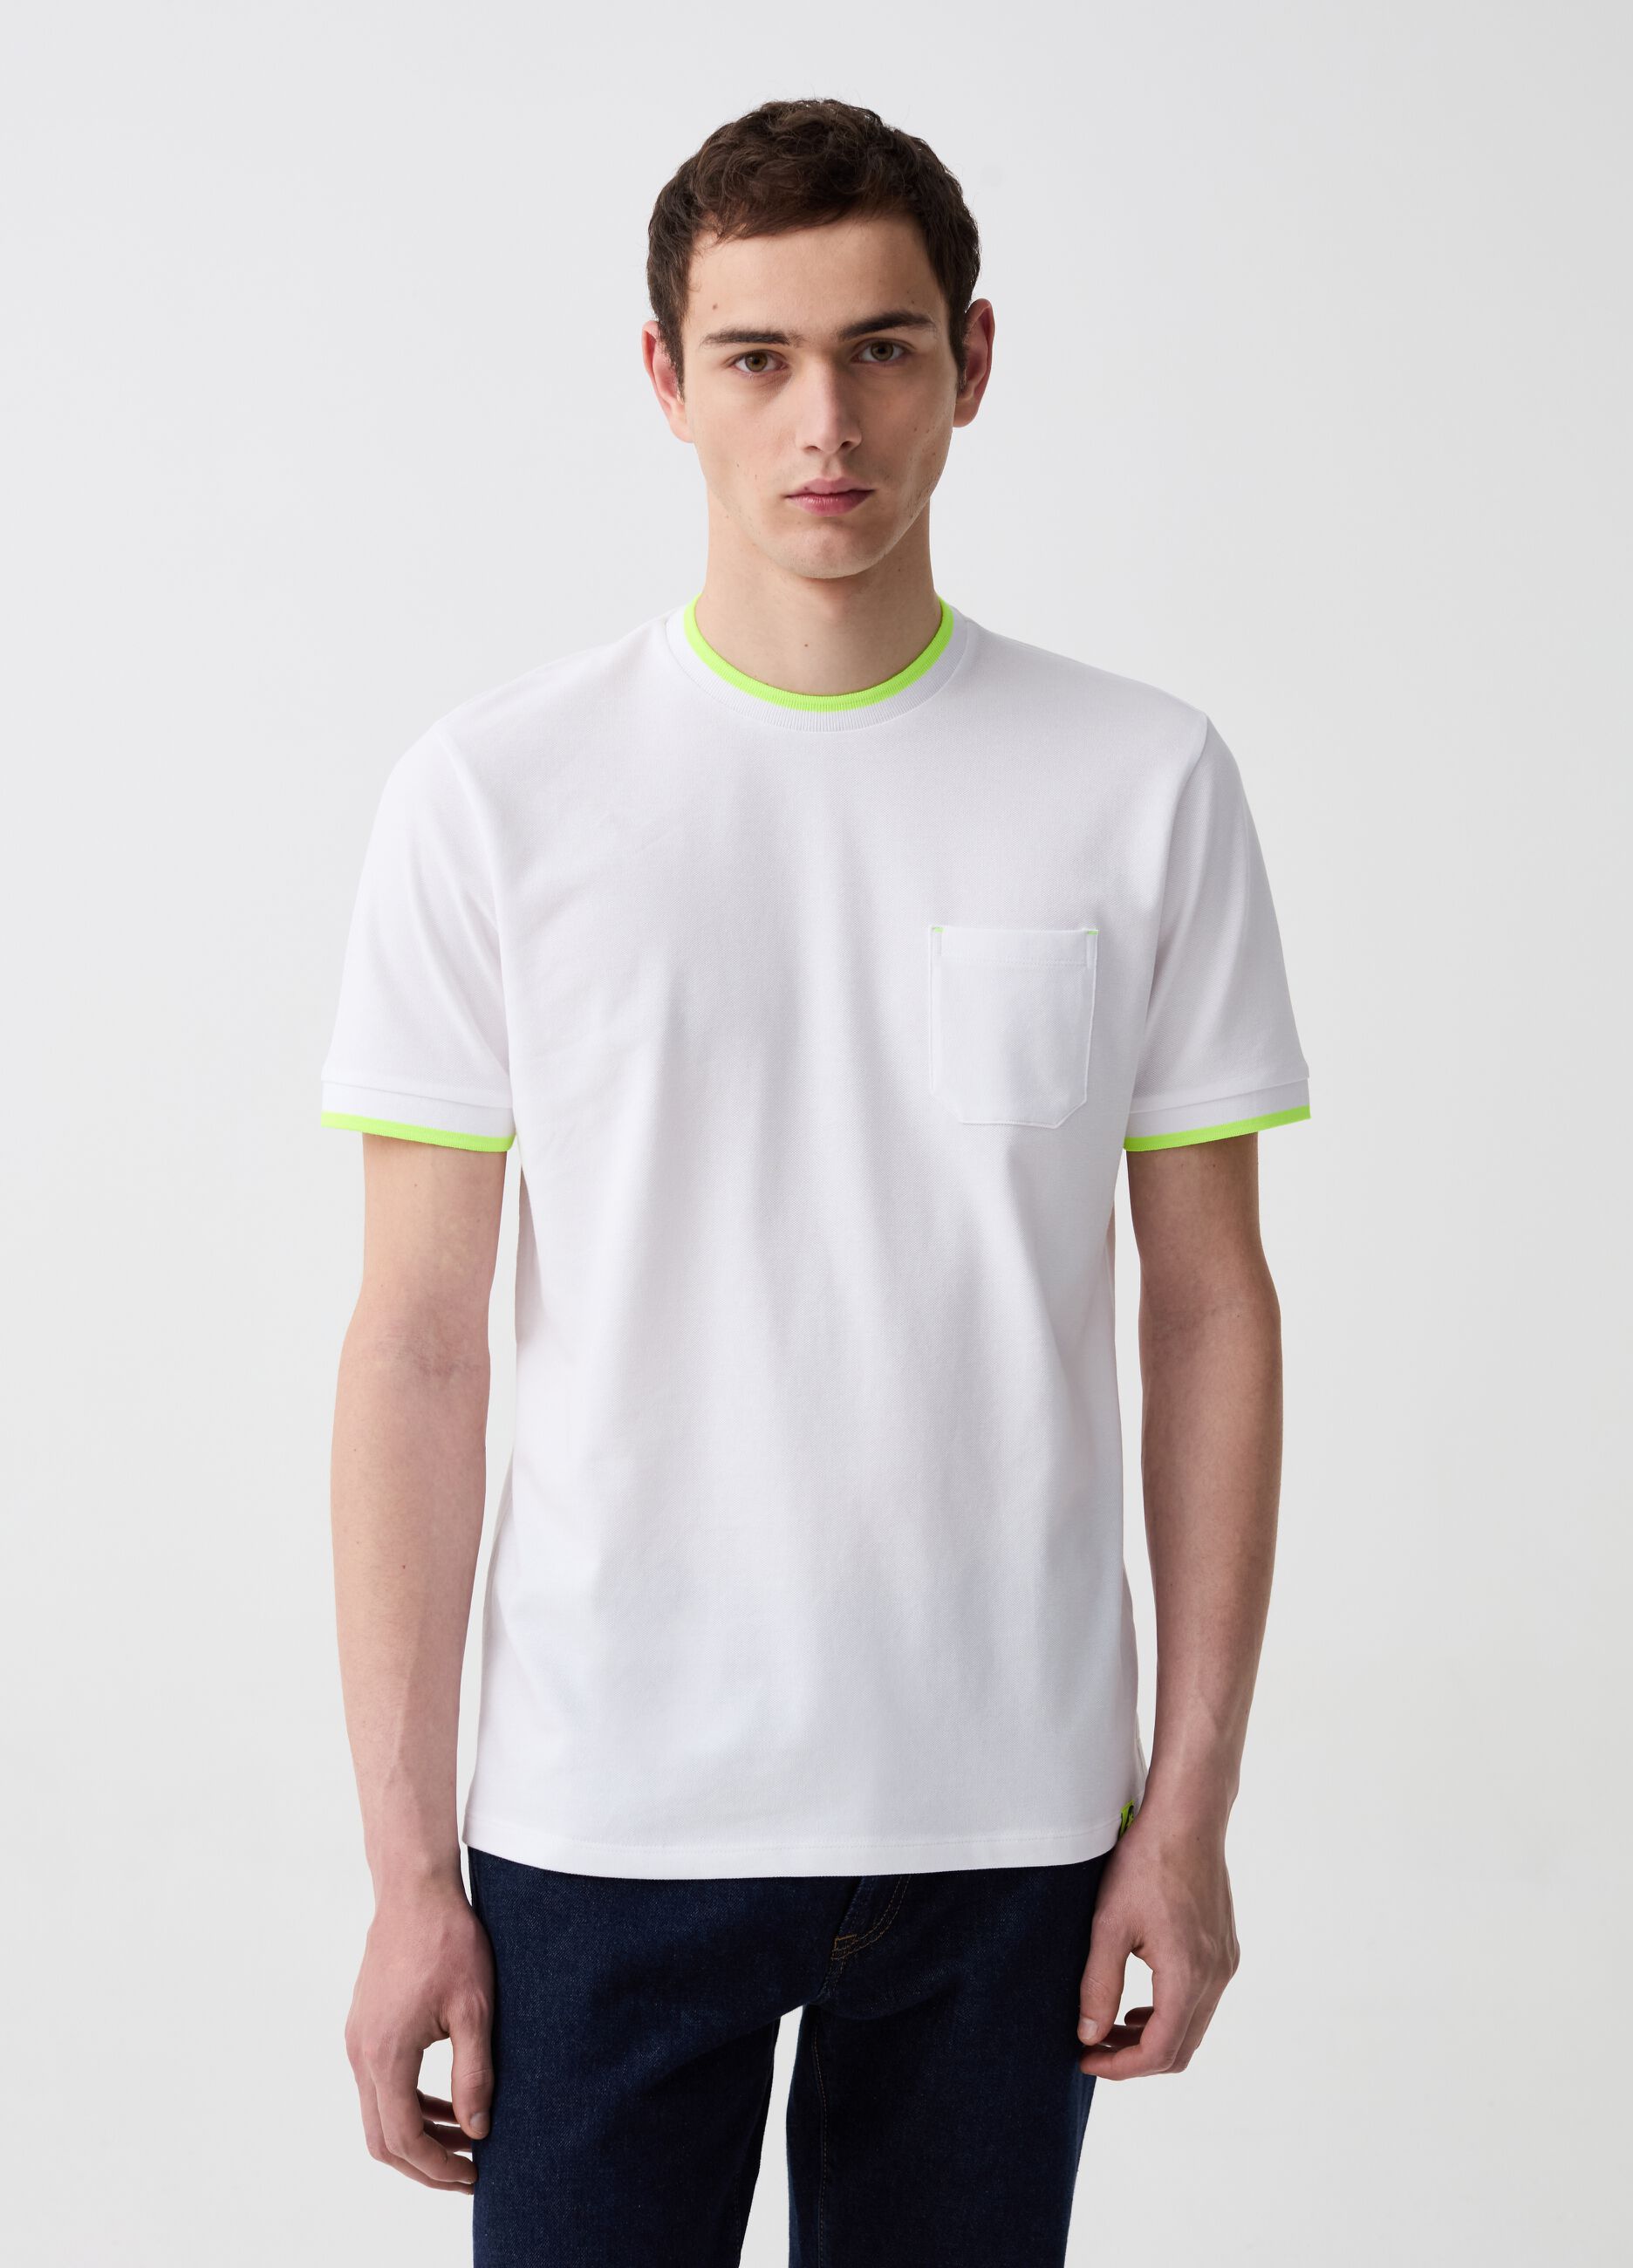 T-shirt in piquet con dettagli fluo